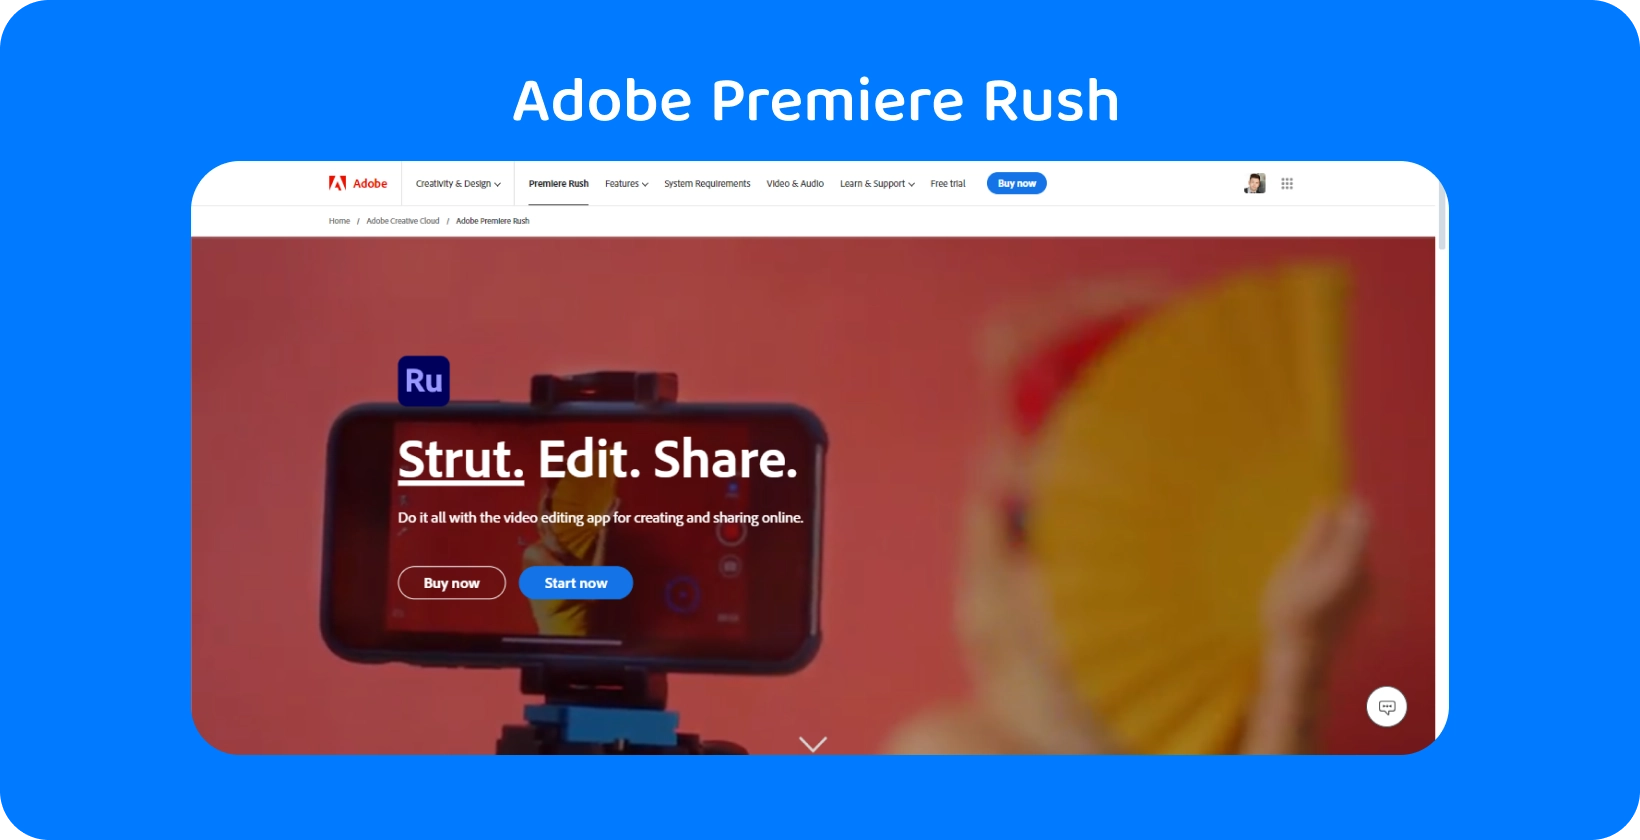 Adobe Premiere Rush jalustalle kiinnitetyssä älypuhelimessa iskulauseella "Strut. Edit. Share." videon editointia varten.